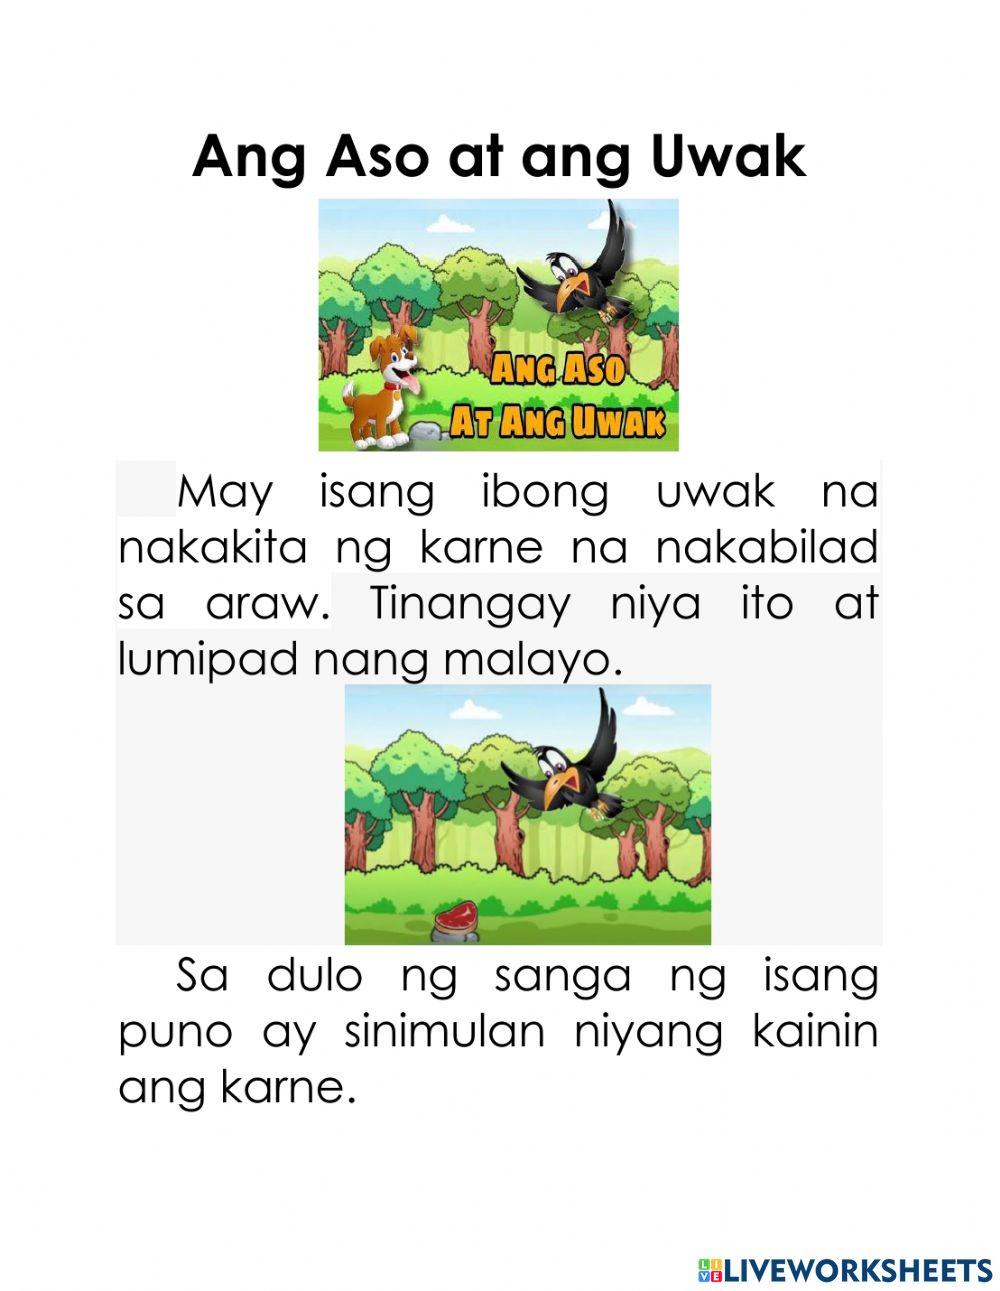 Ang aso at uwak